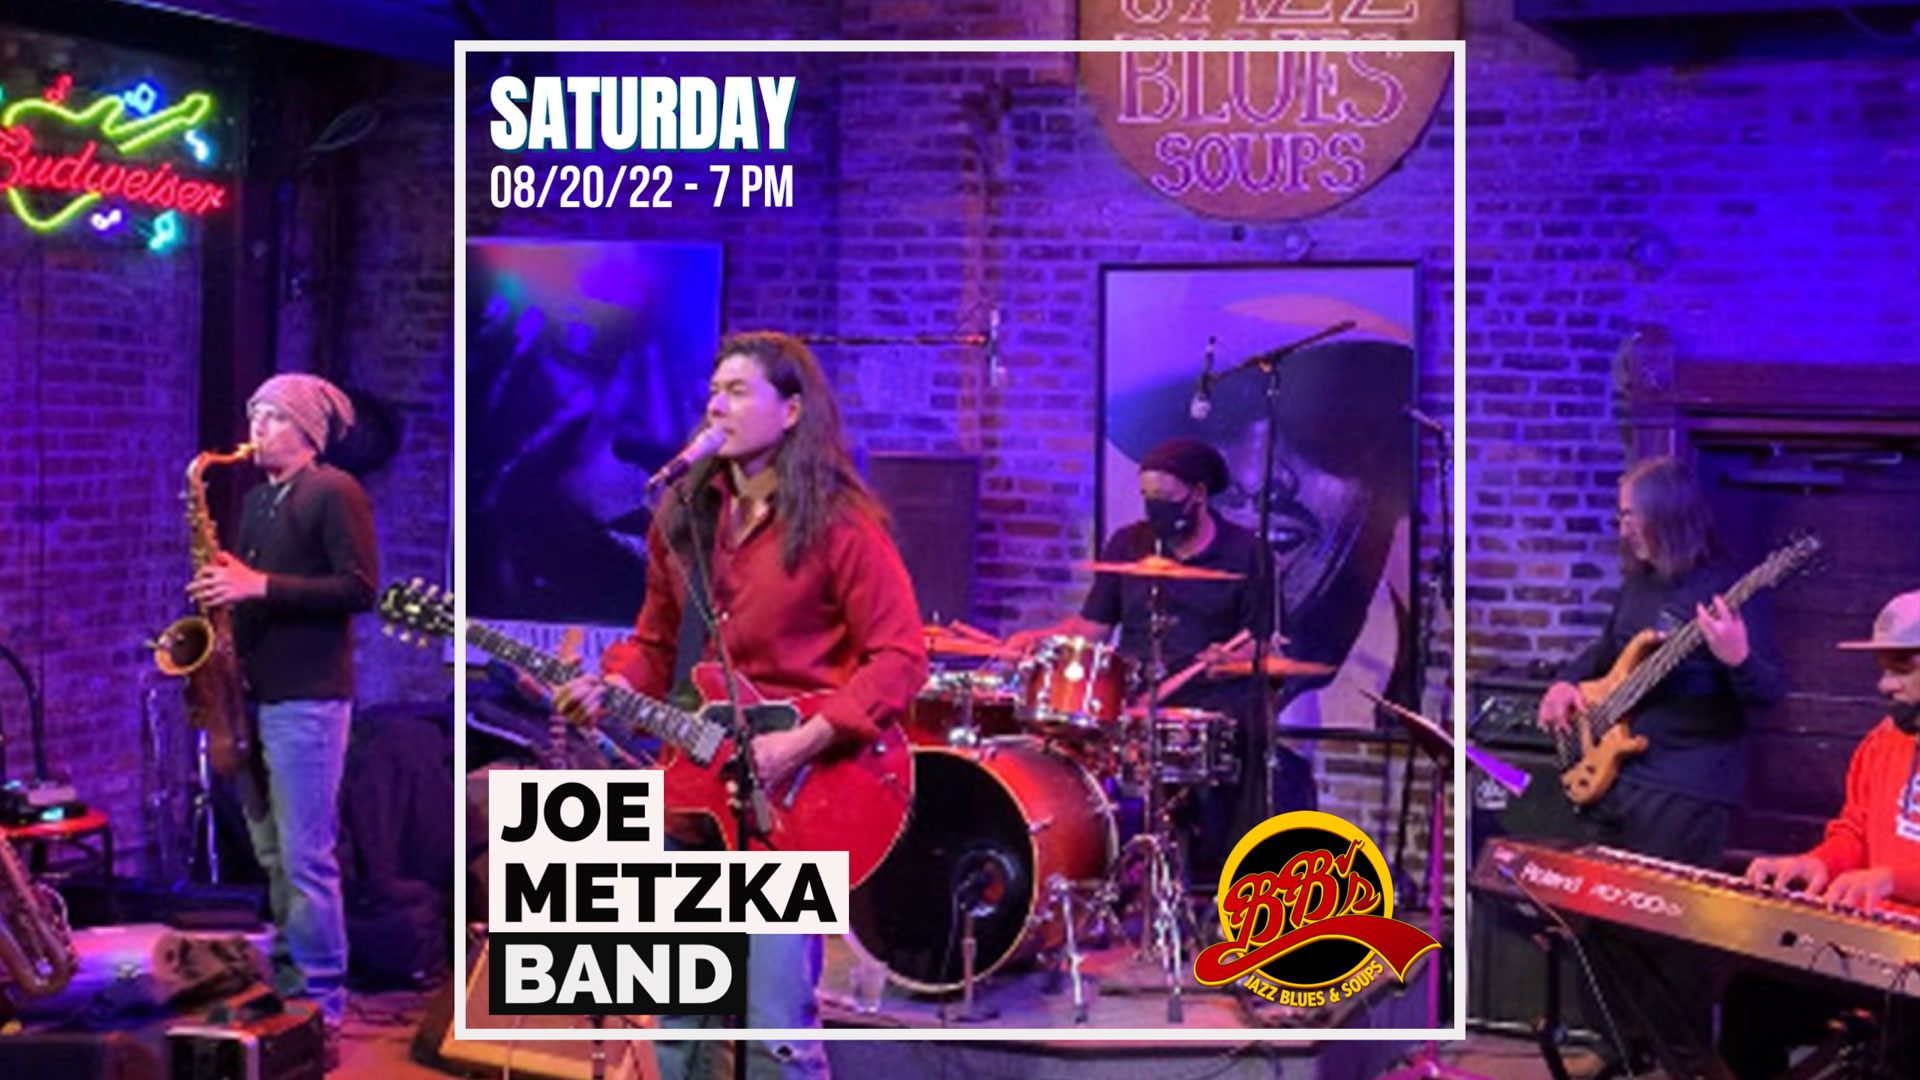 Joe Metzka Band